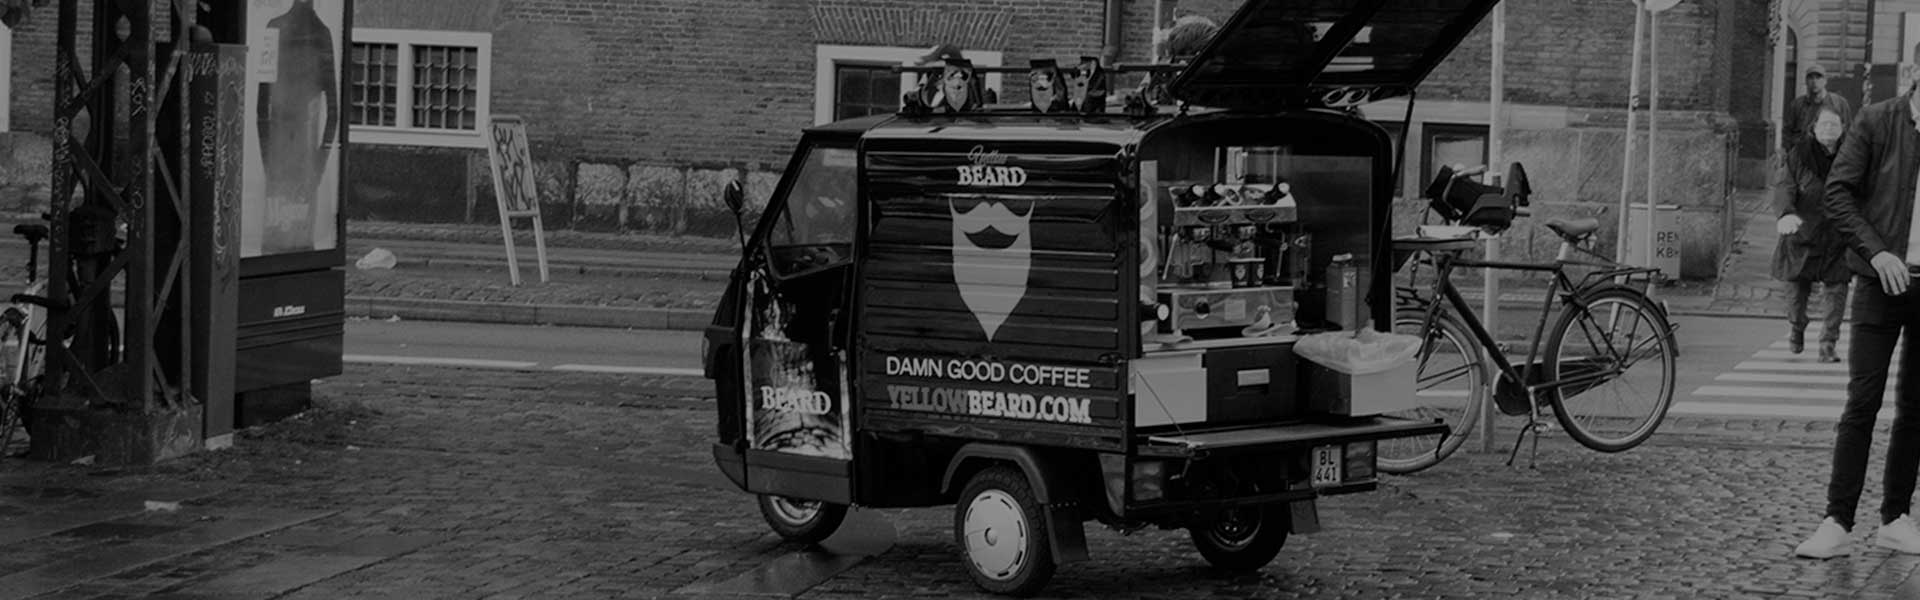 Kaffe bil i København